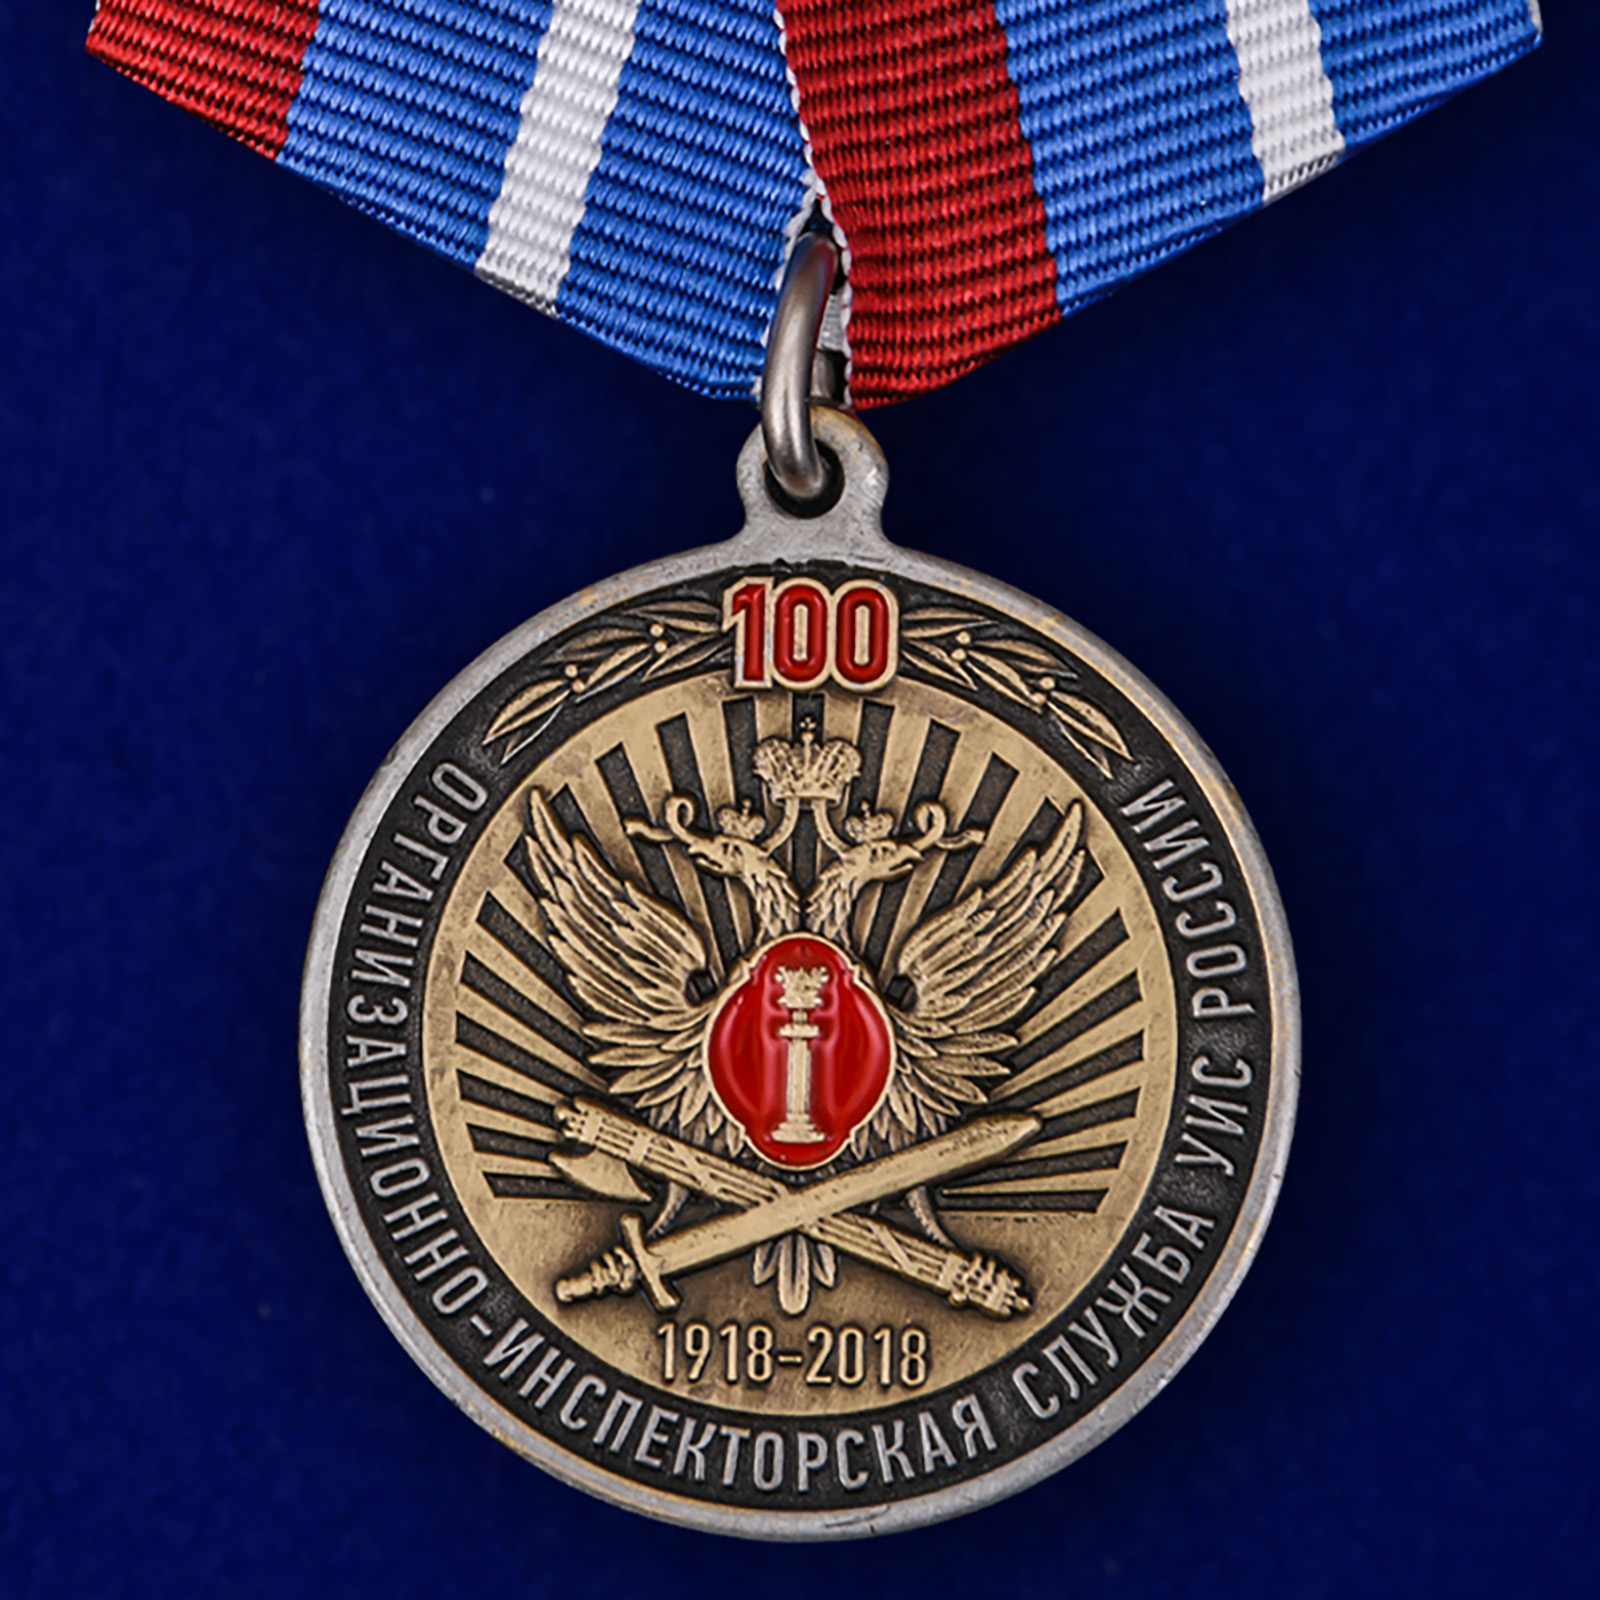 Купить медаль 100 лет Организационно-инспекторской службы УИС России на подставке выгодно